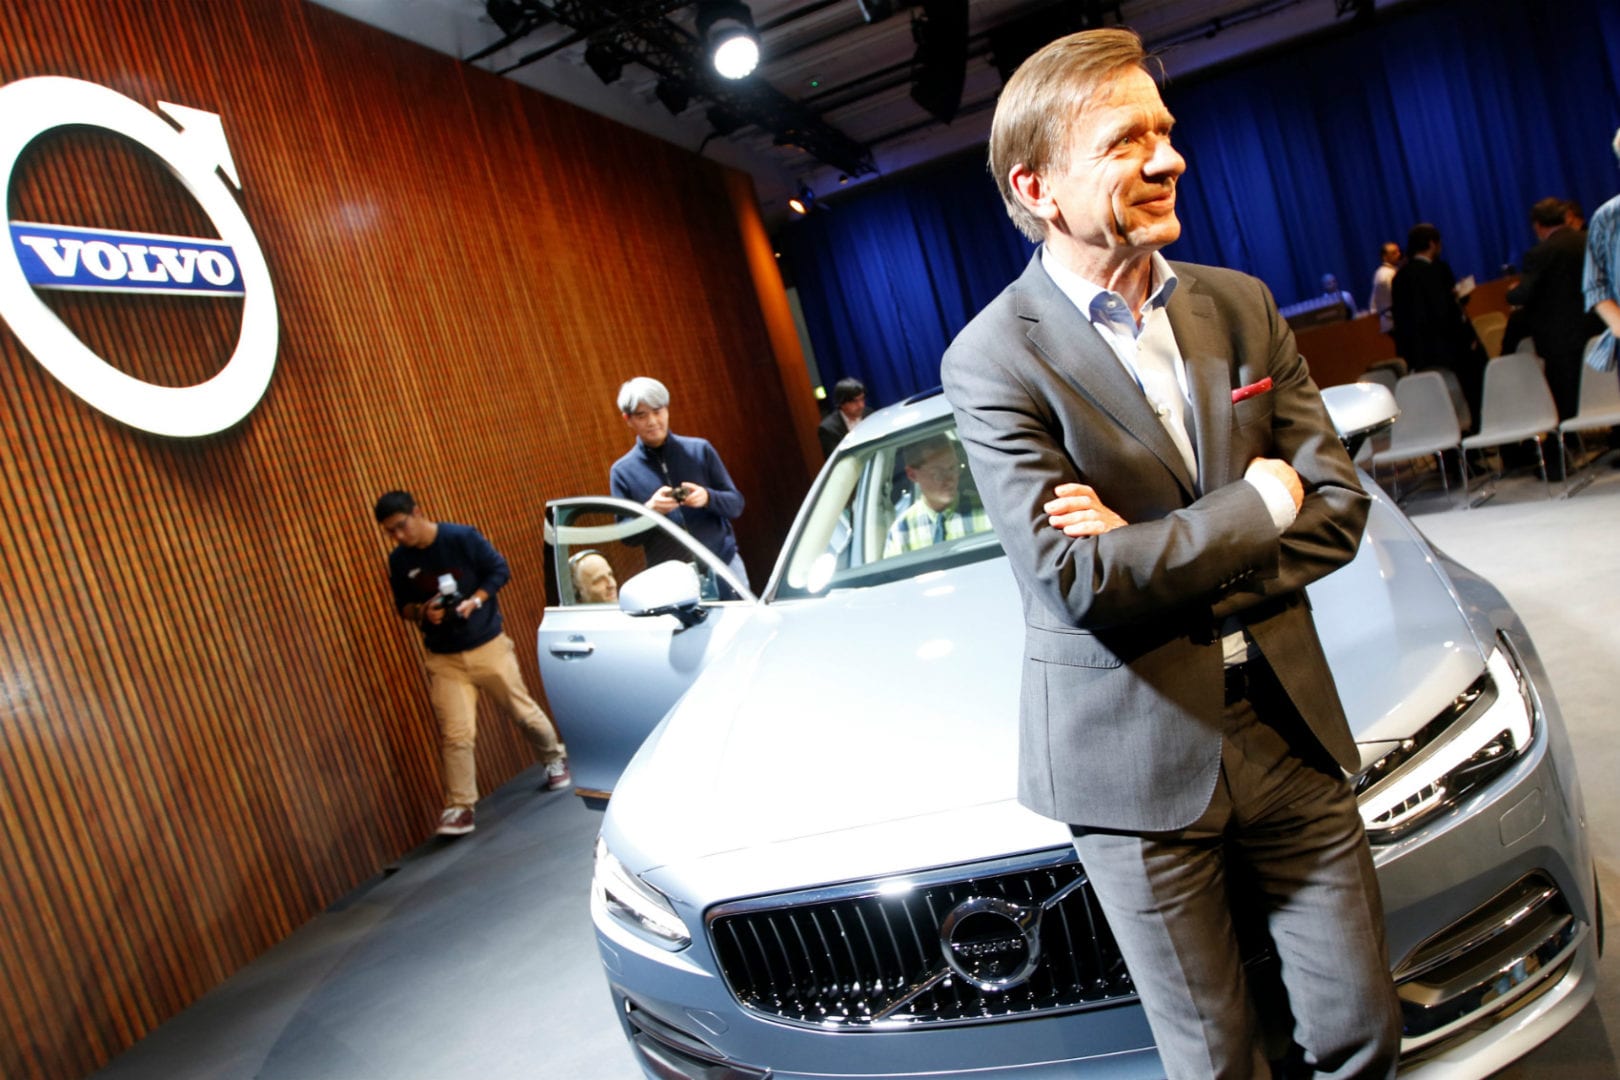 Hakan Samuelsson, CEO da Volvo, foi o homem escolhido para desenhar o acordo de fusão entre a Geely, que já proprietária da marca sueca, e a Volvo